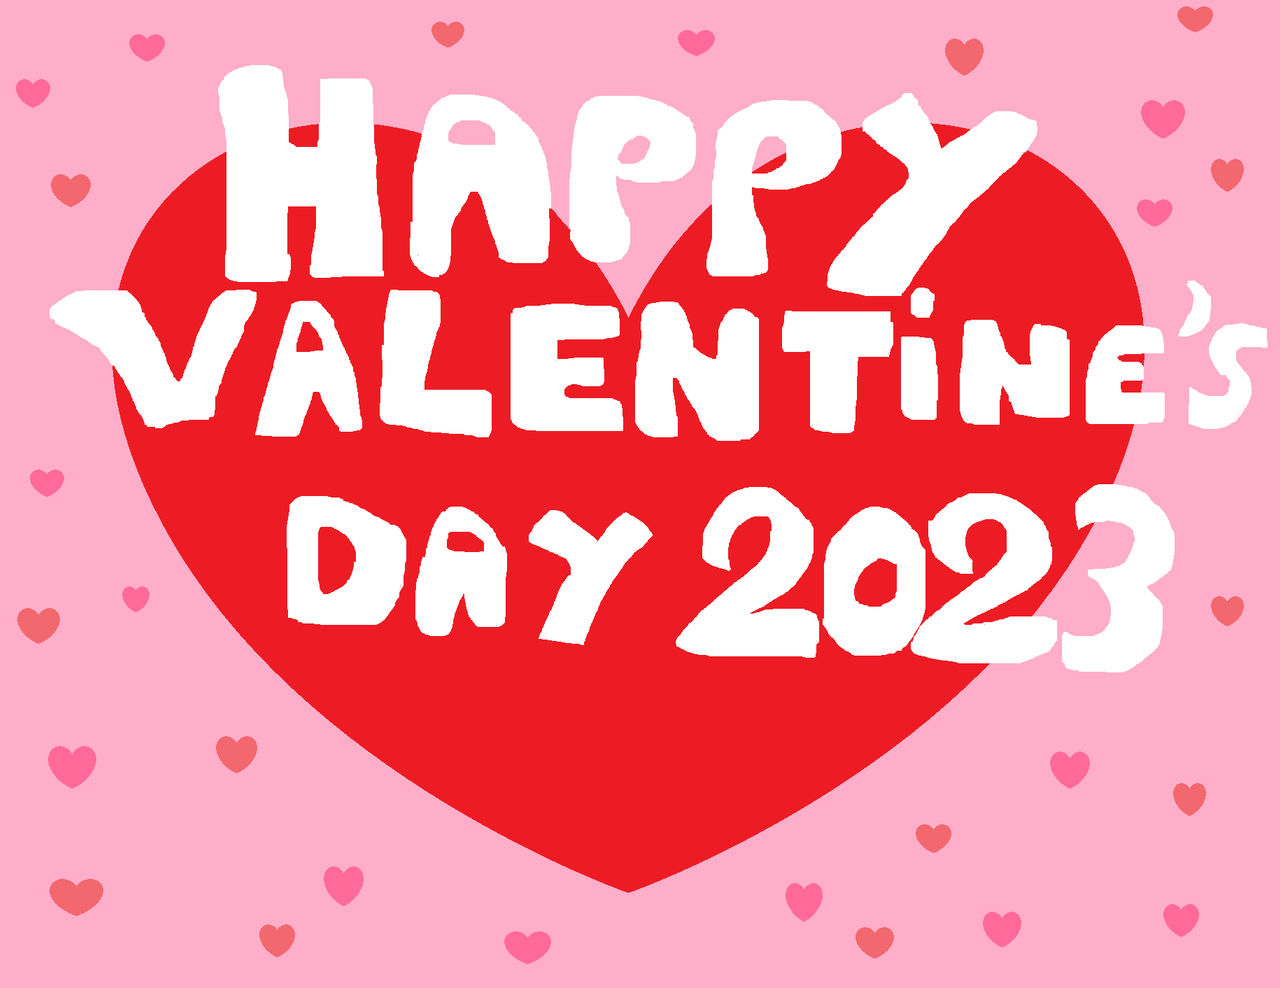 Happy Valentine's Day 2023! 